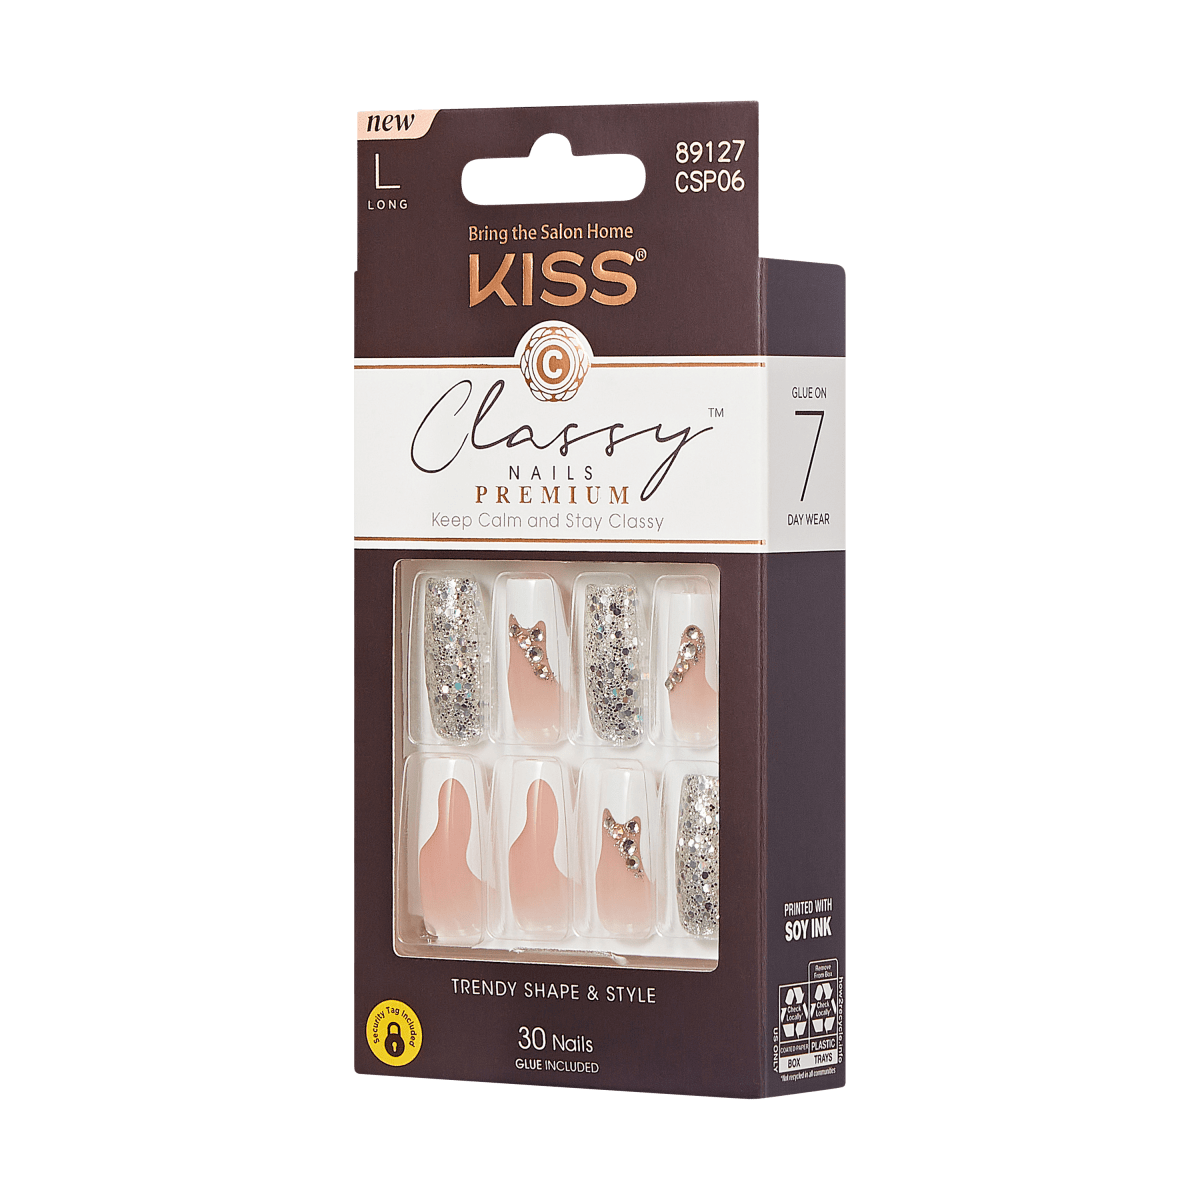 KISS Classy Premium Nails - Stay Modish